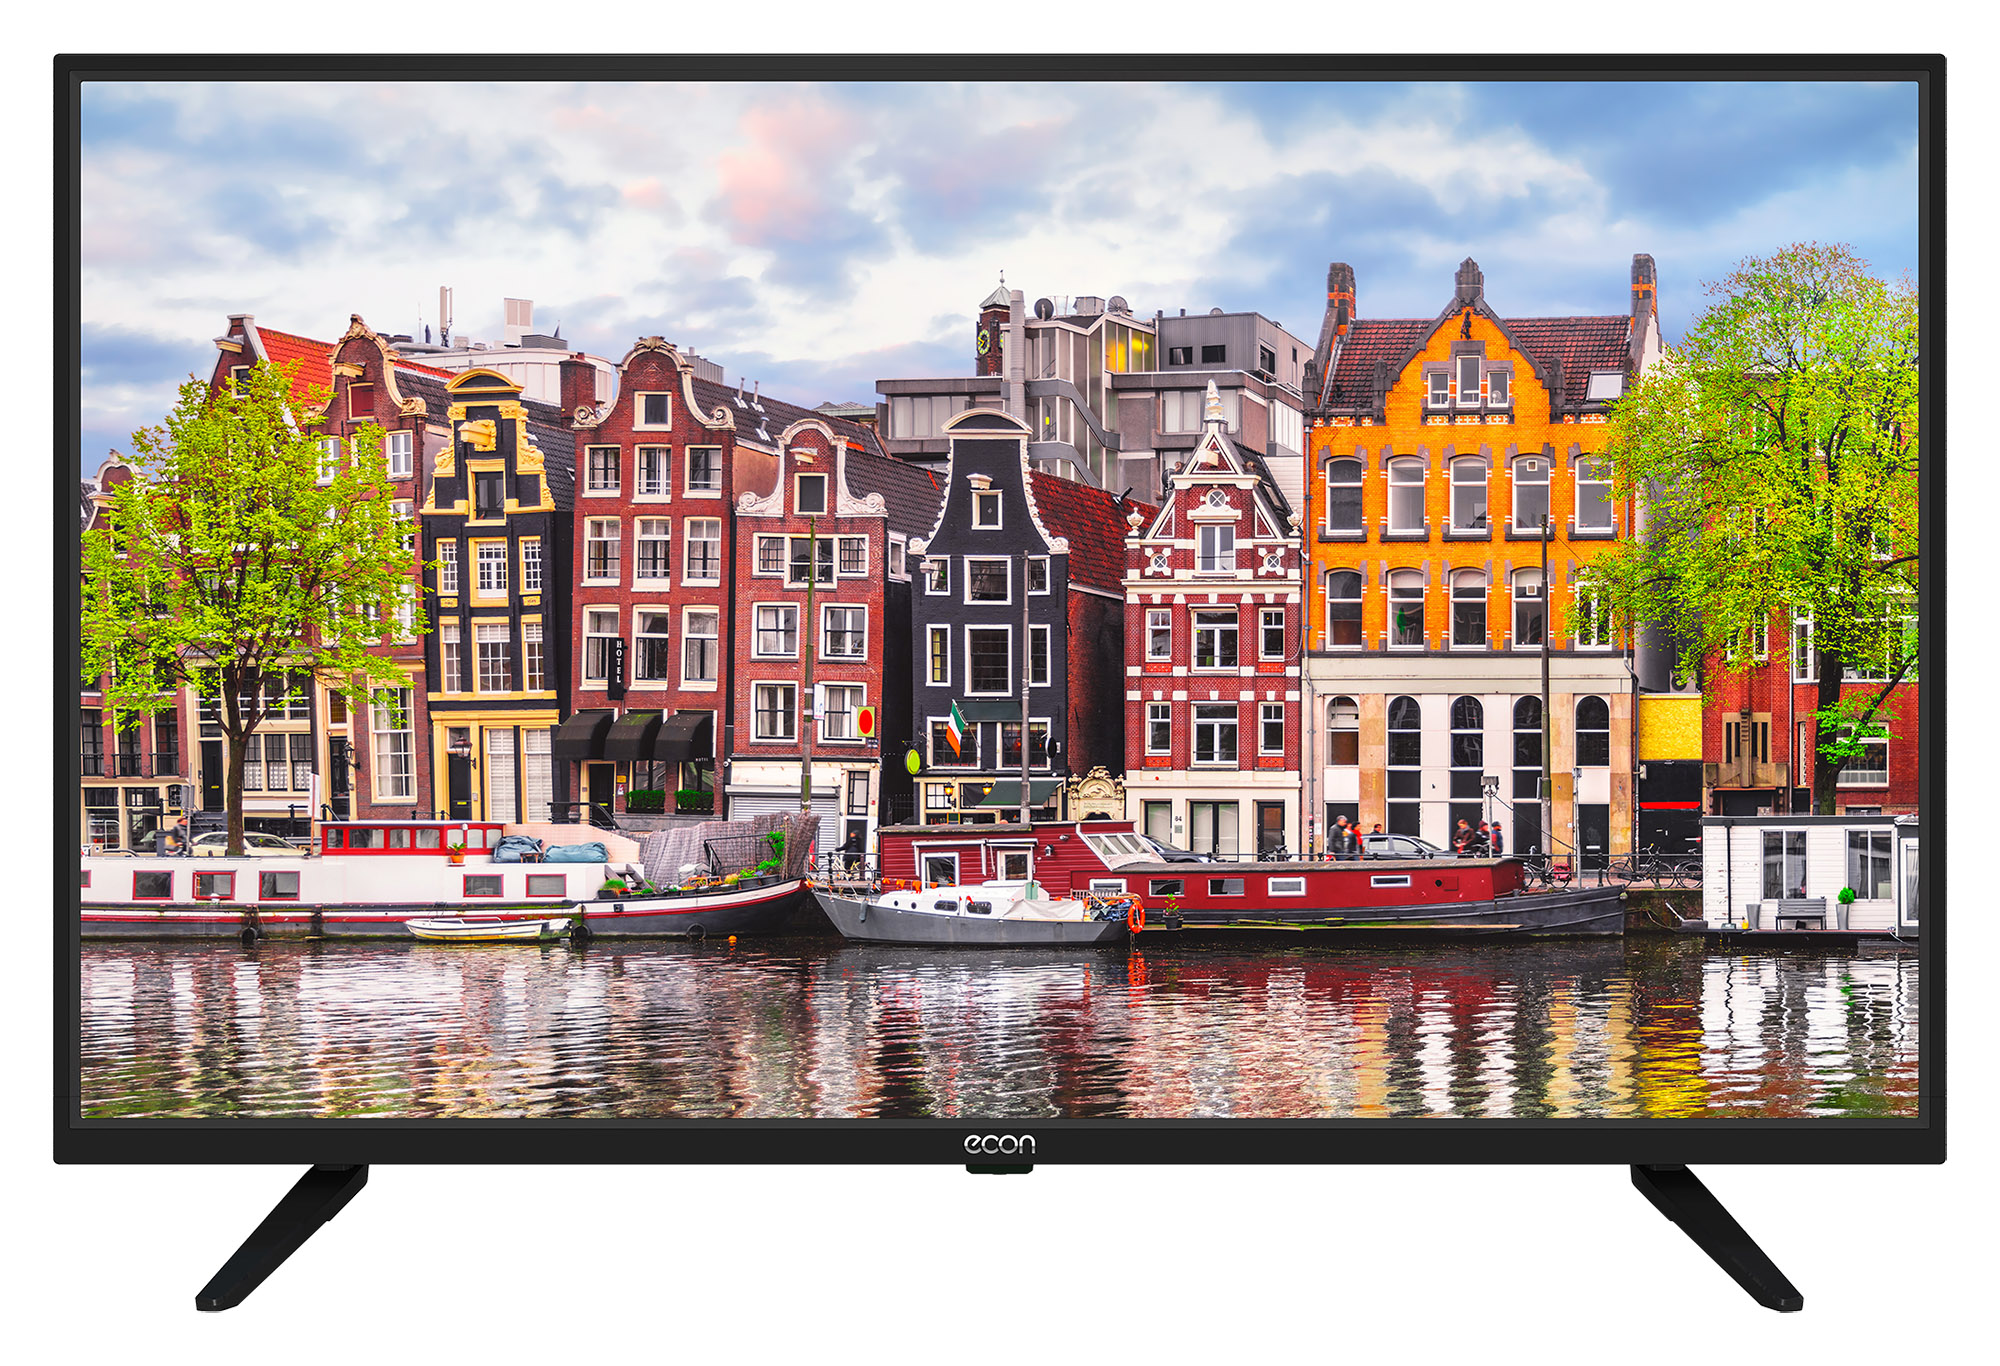 Картинка Телевизор ECON EX-40FT007B по разумной цене купить в интернет магазине mall.su